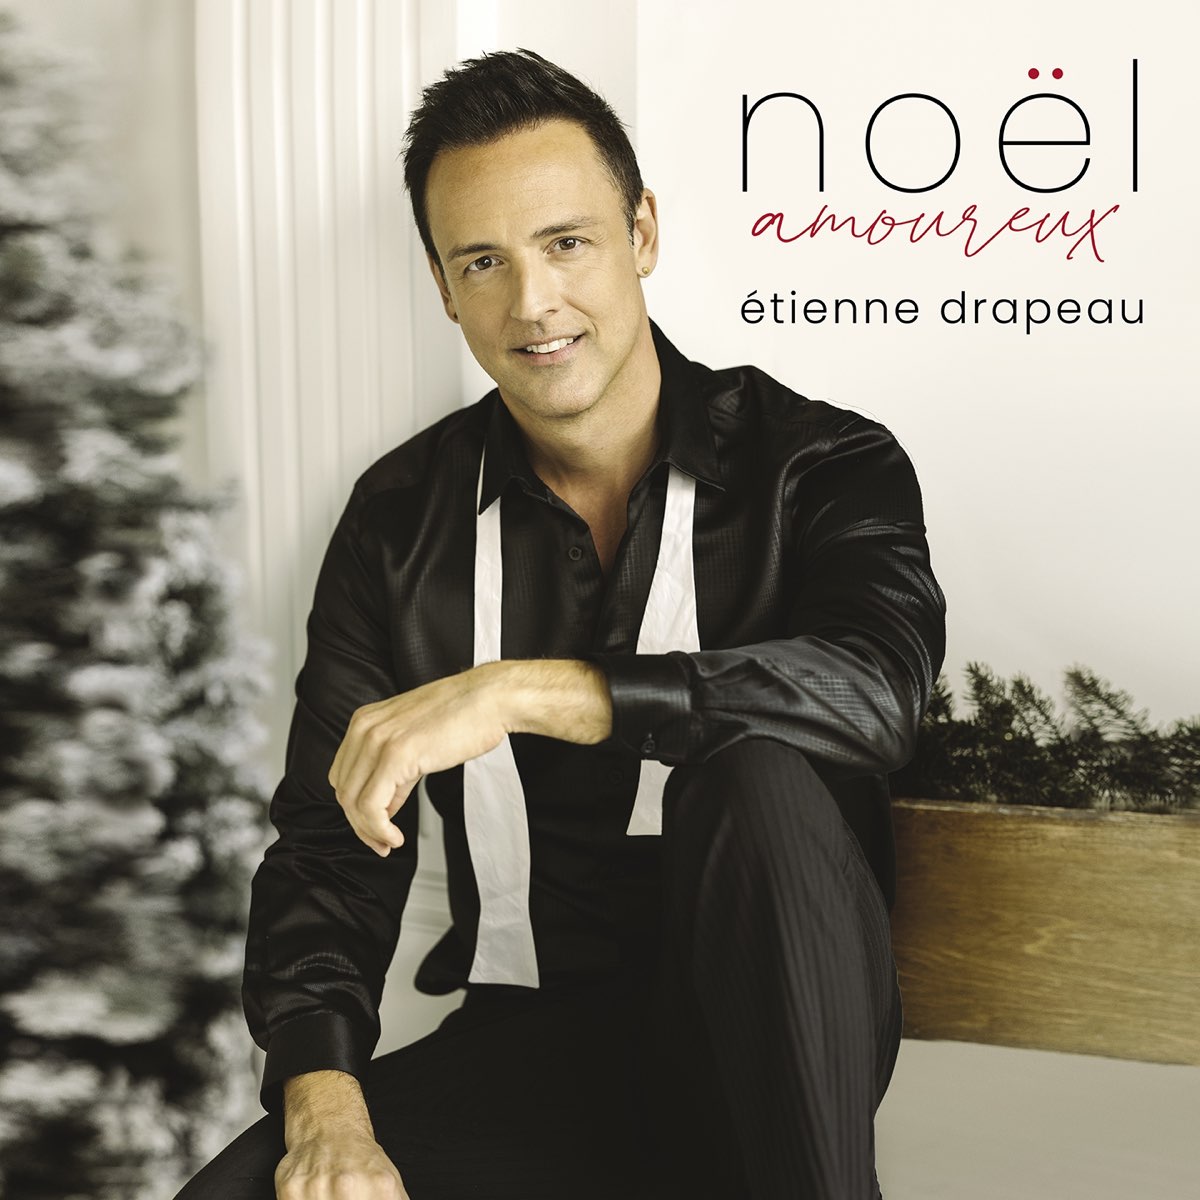 ‎Noël amoureux - Album by Étienne Drapeau - Apple Music